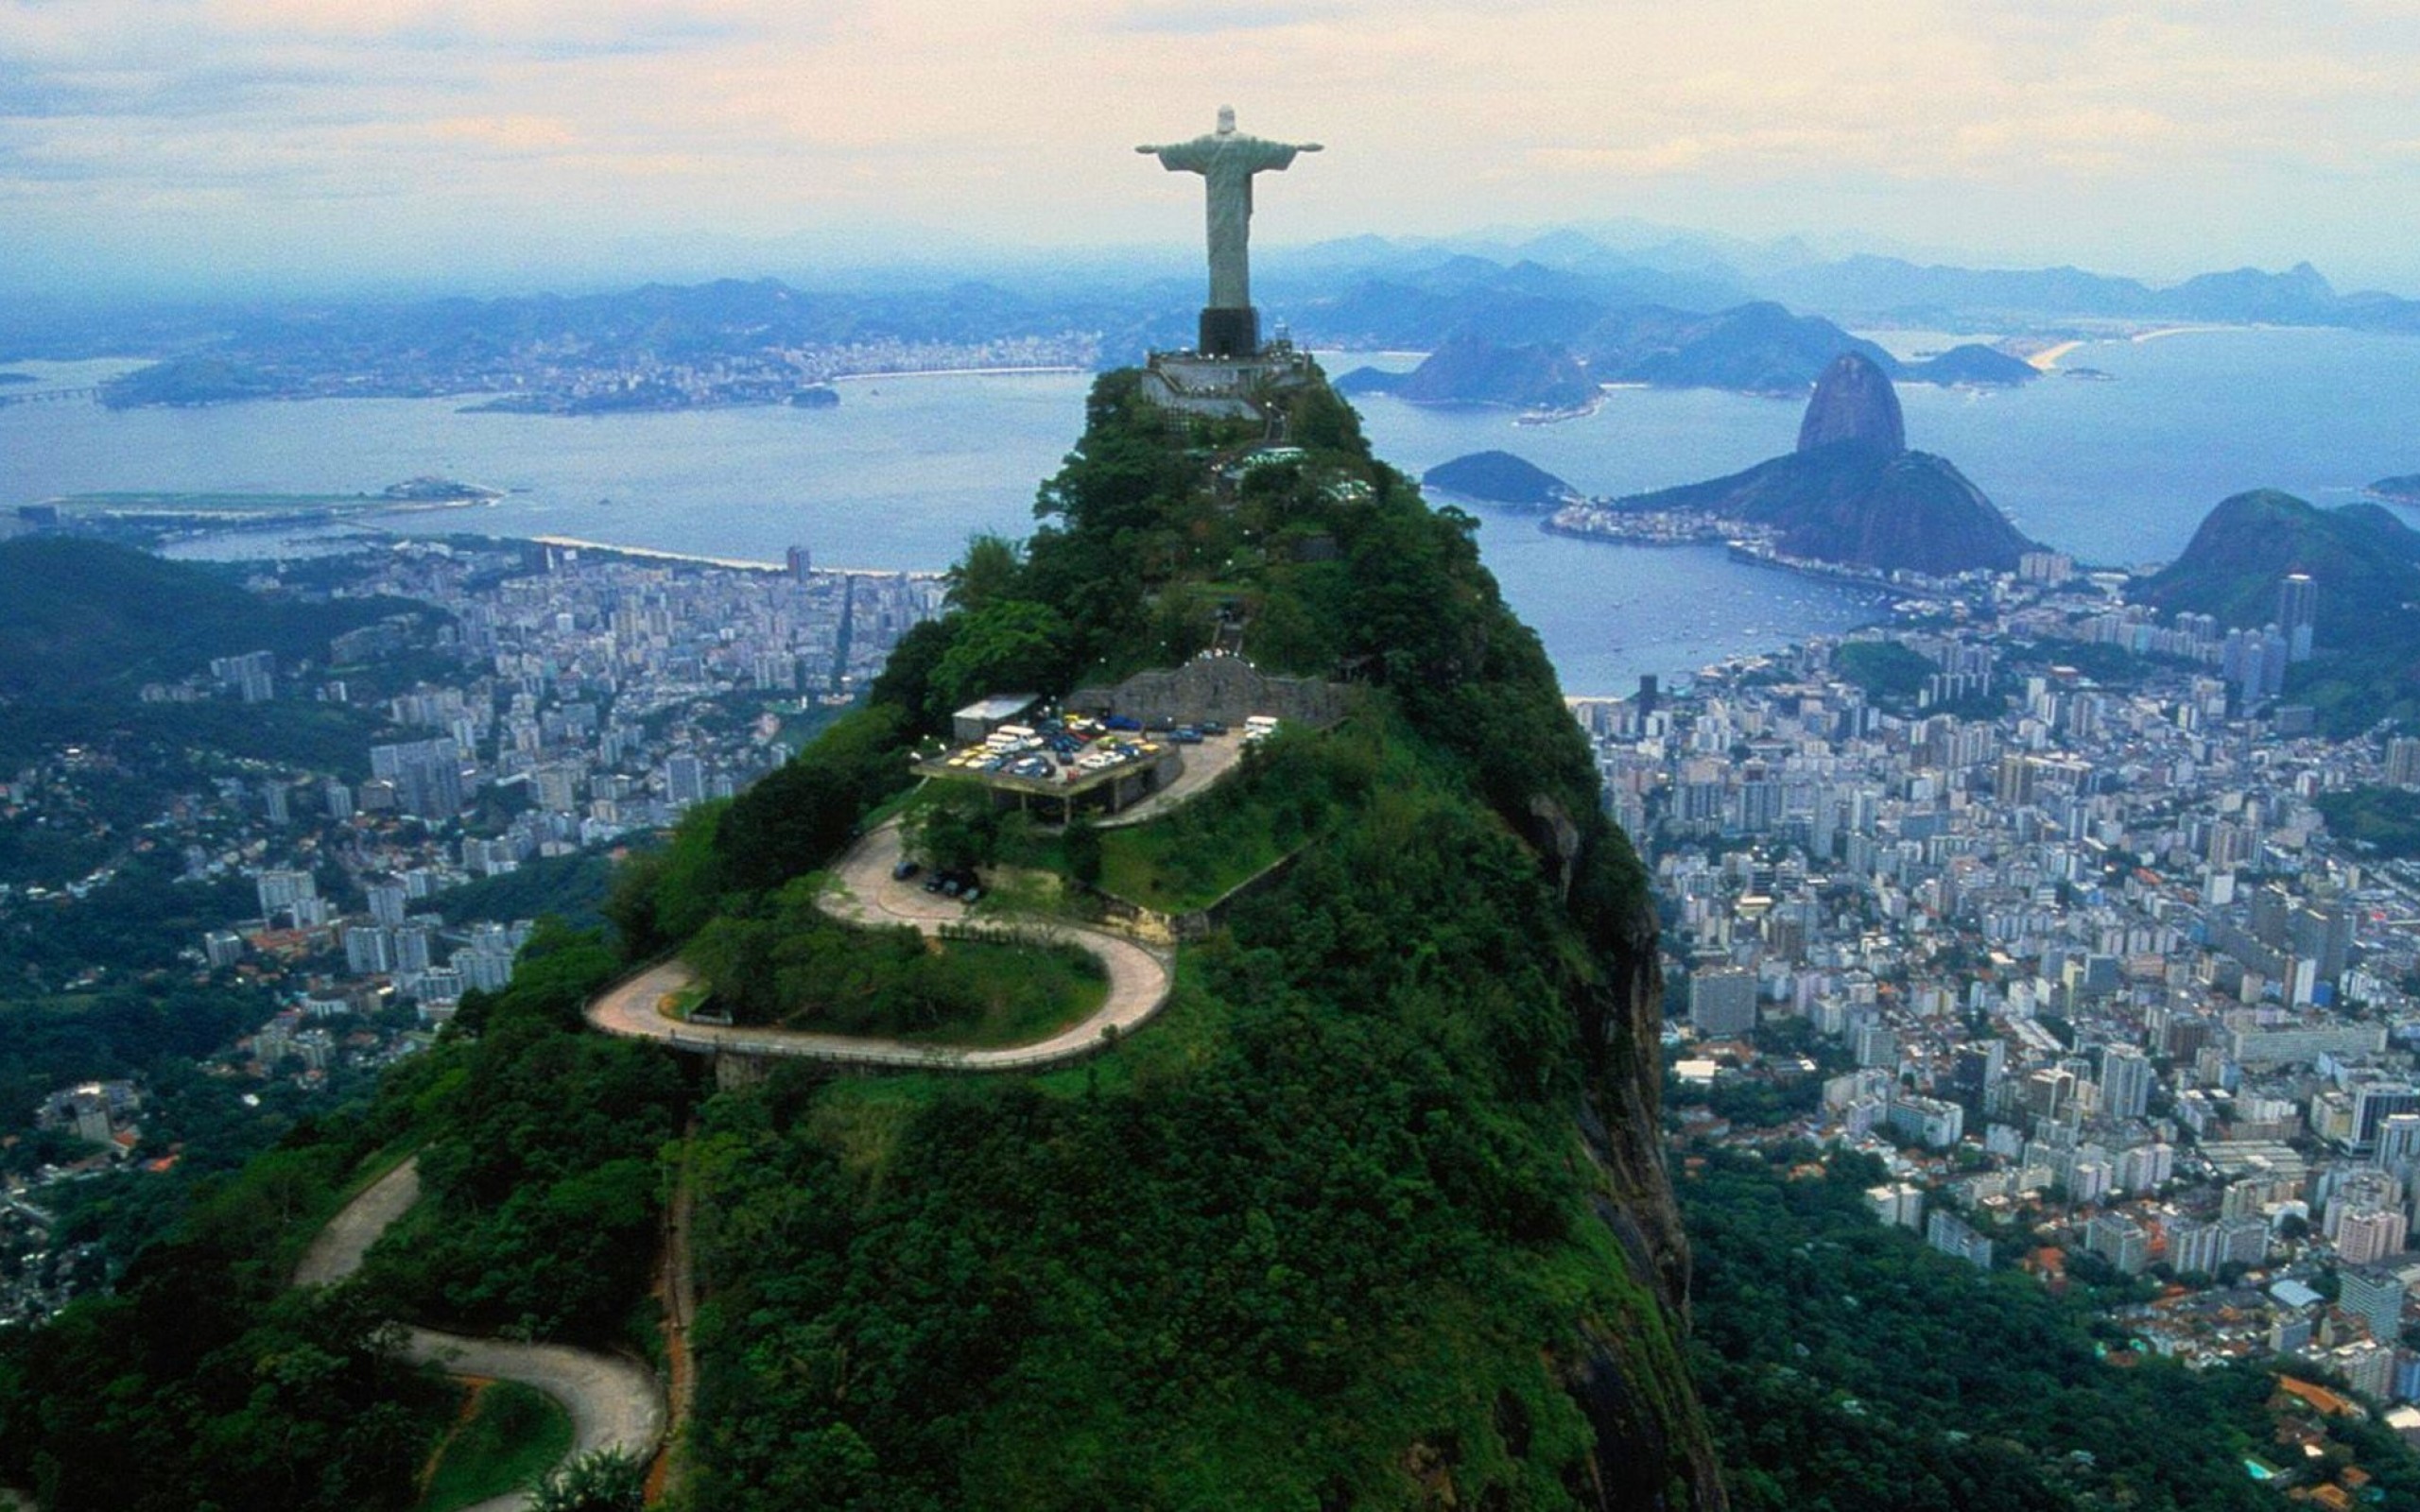 Statue-of-Jesus-Rio-de-Janeiro-Brazil-aerial-view